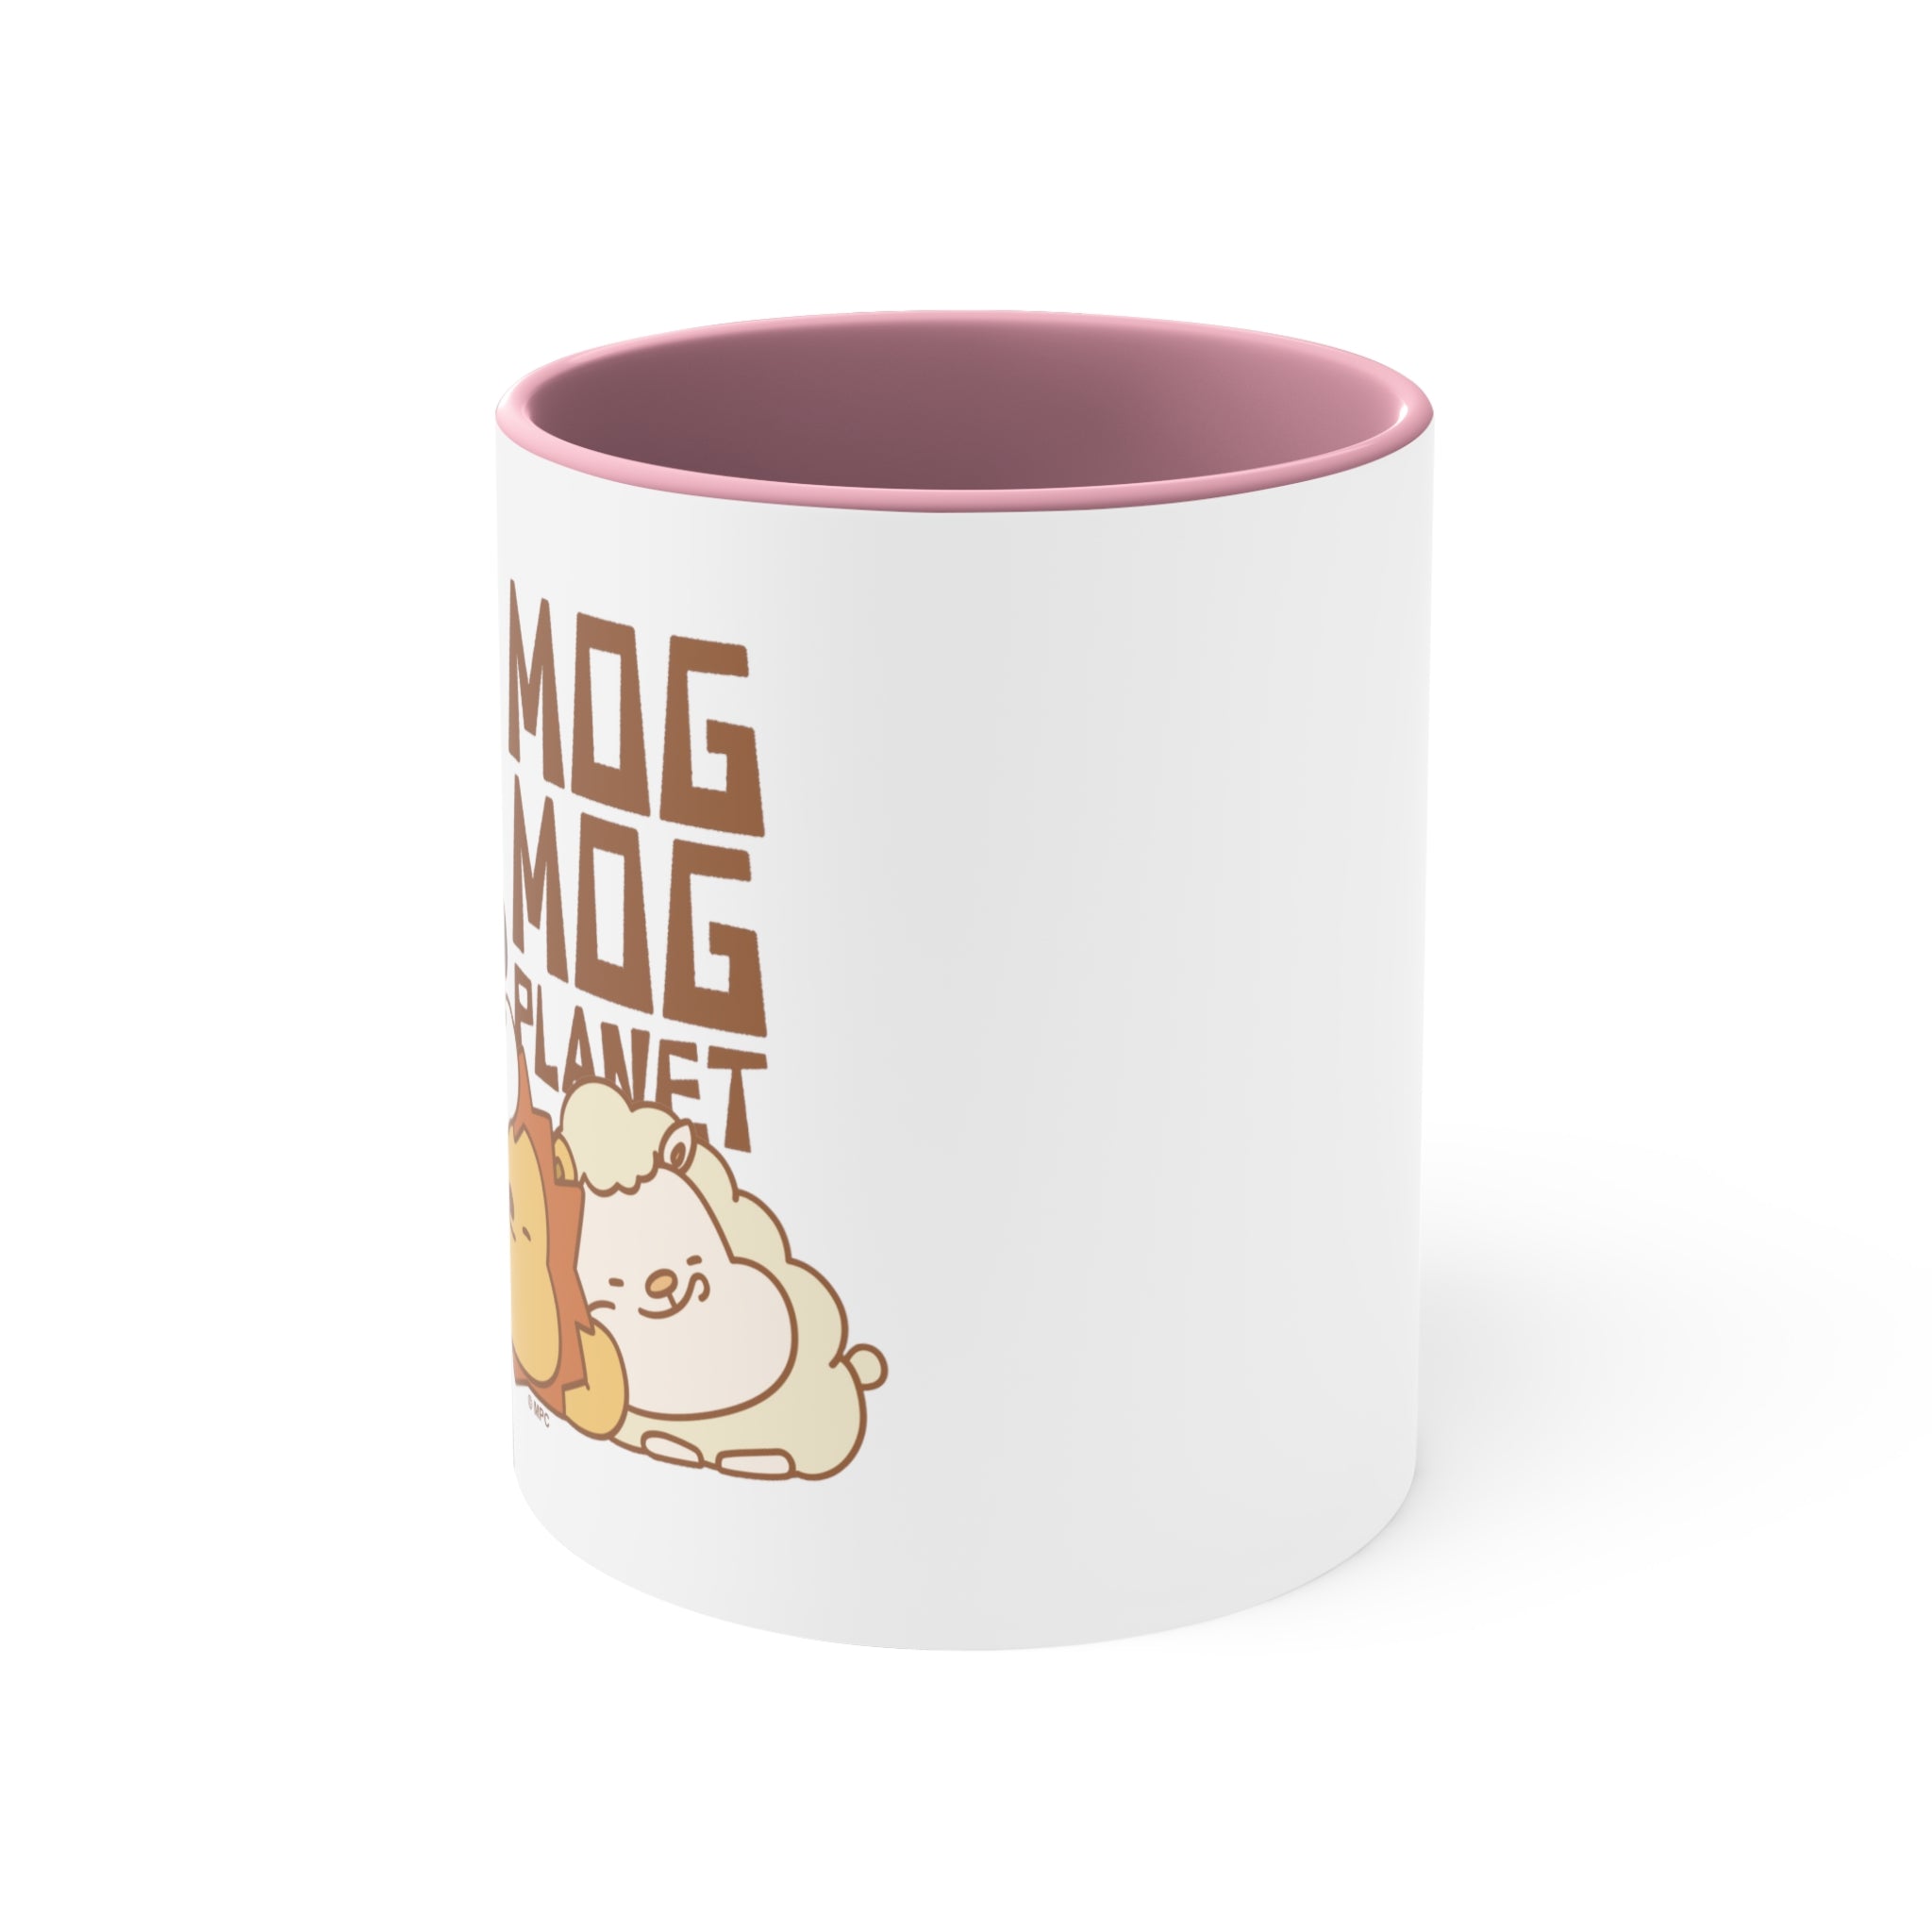 MogMog Planet Self-Care Mug 11oz (Cute ver.) [PINK]